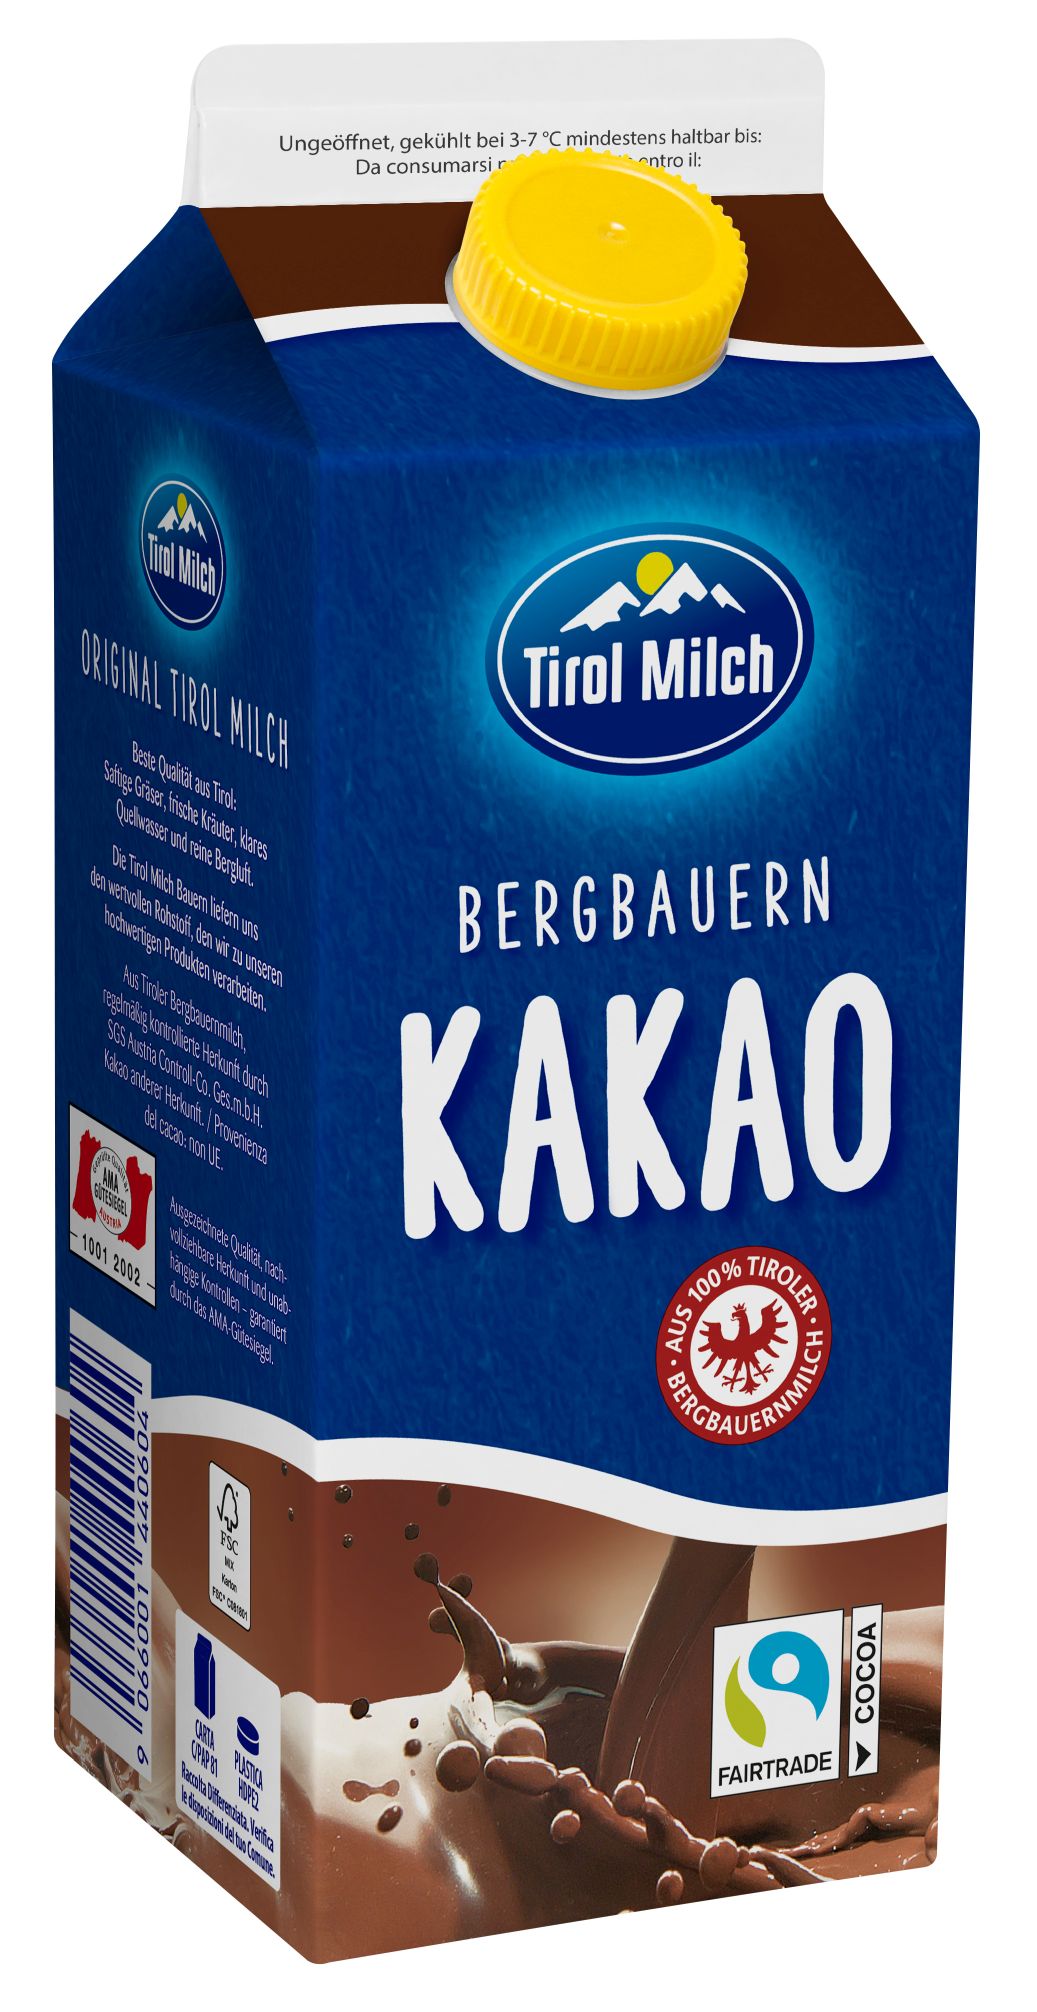 Tirol Milch Bergbauern Kakaomilch-Getränk